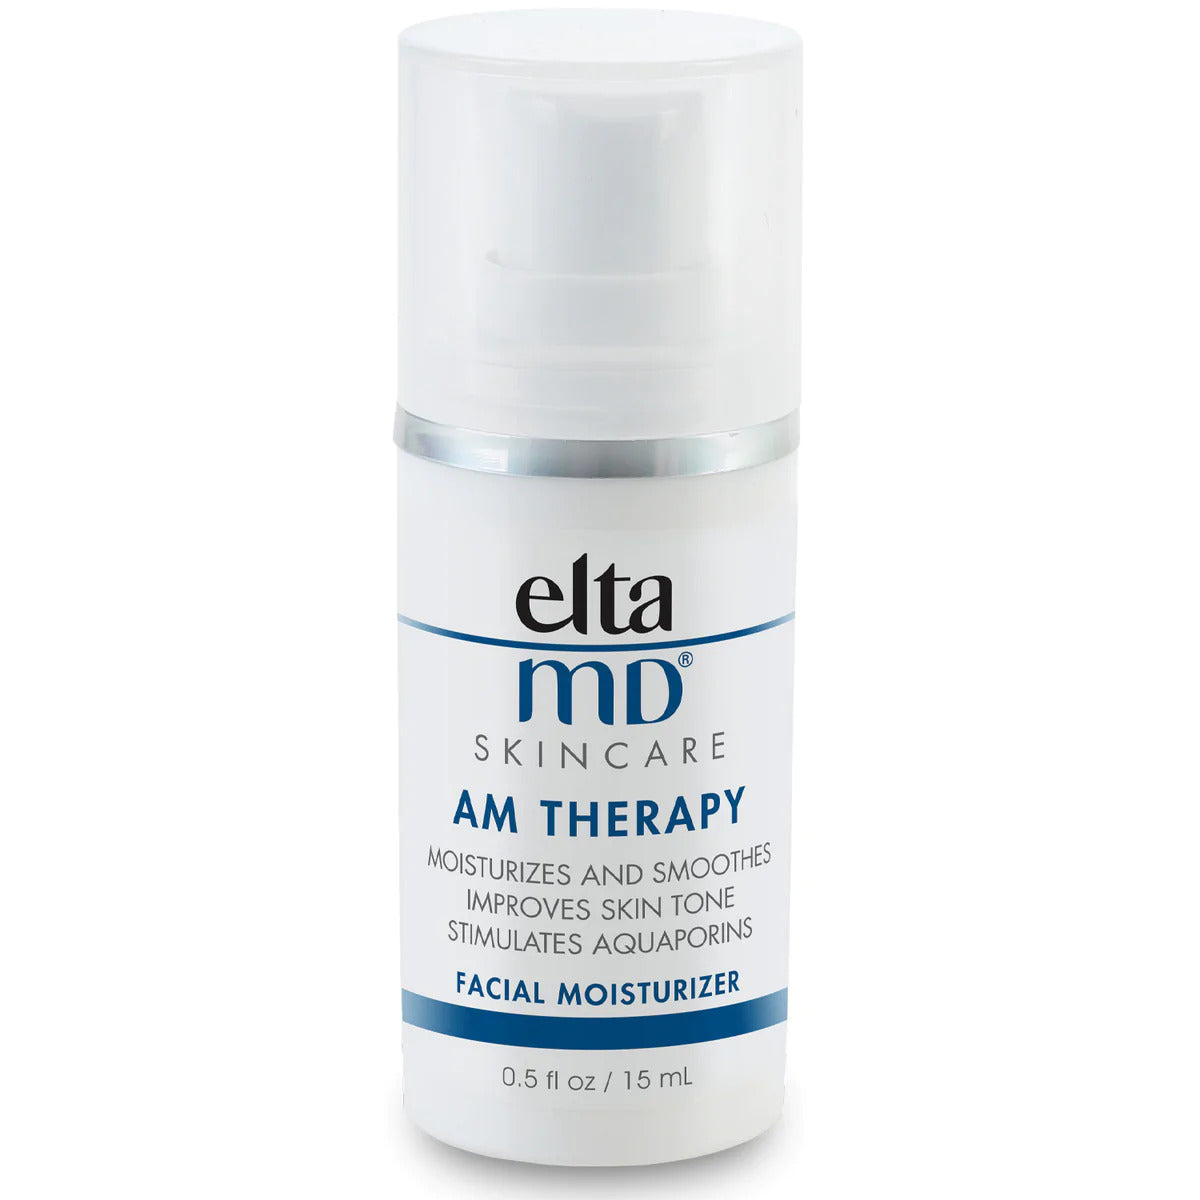 EltaMD Prova Daqs AM Therapy Moisturizer tal-wiċċ (0.5 oz)